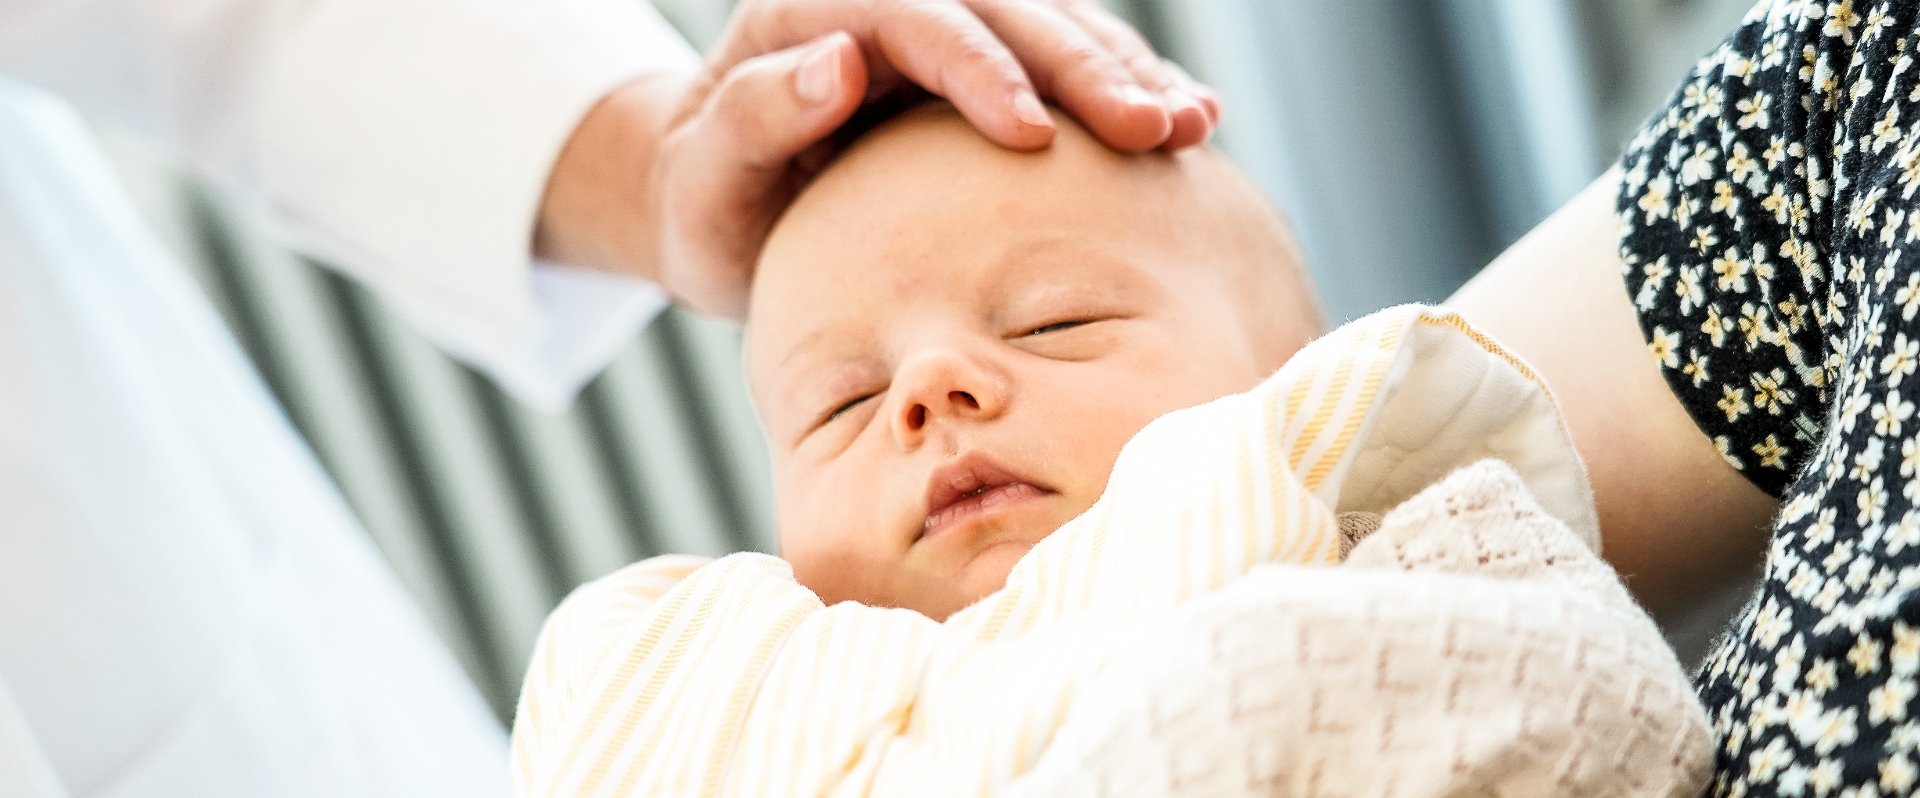 Hand berührt Baby nach der Geburt am Kopf